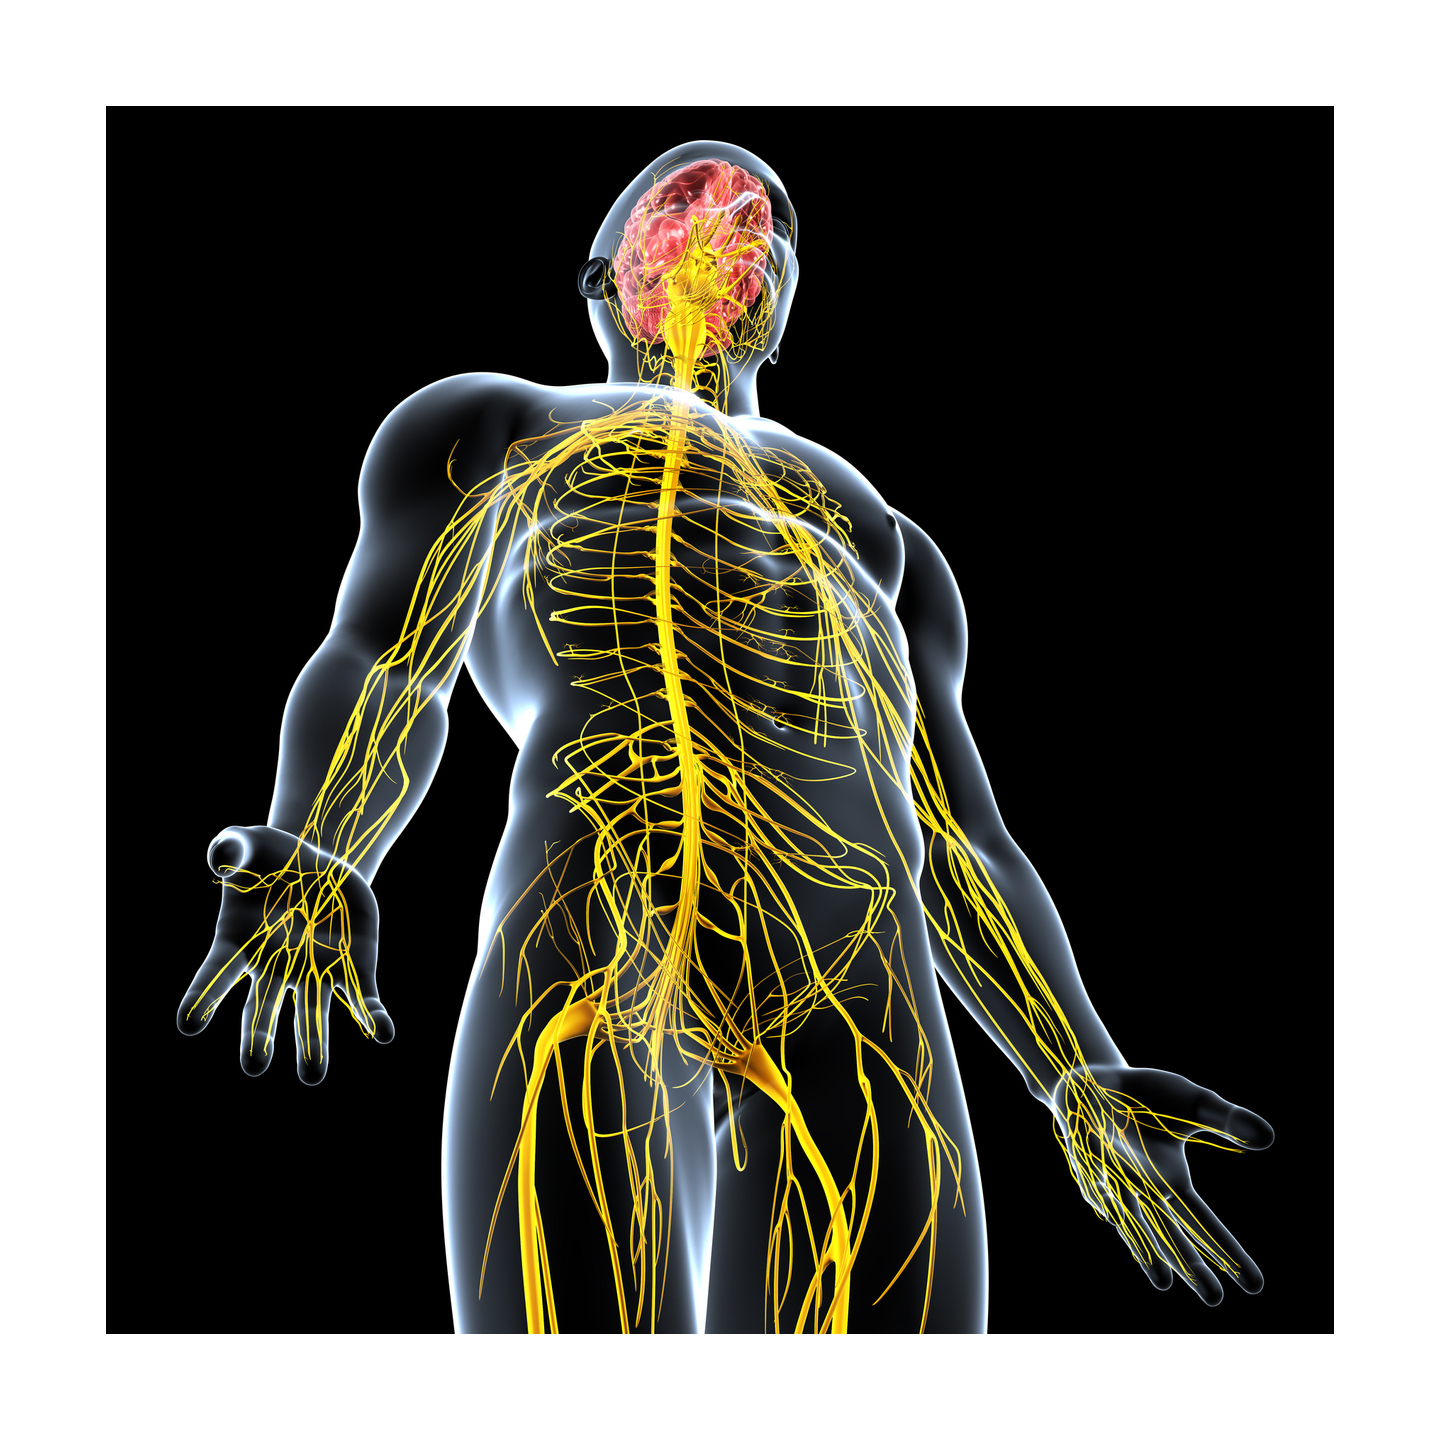 Нервные органы. Нервная система человека. Нервы человека. Периферическая нервная система человека. Мозг и нервная система человека.